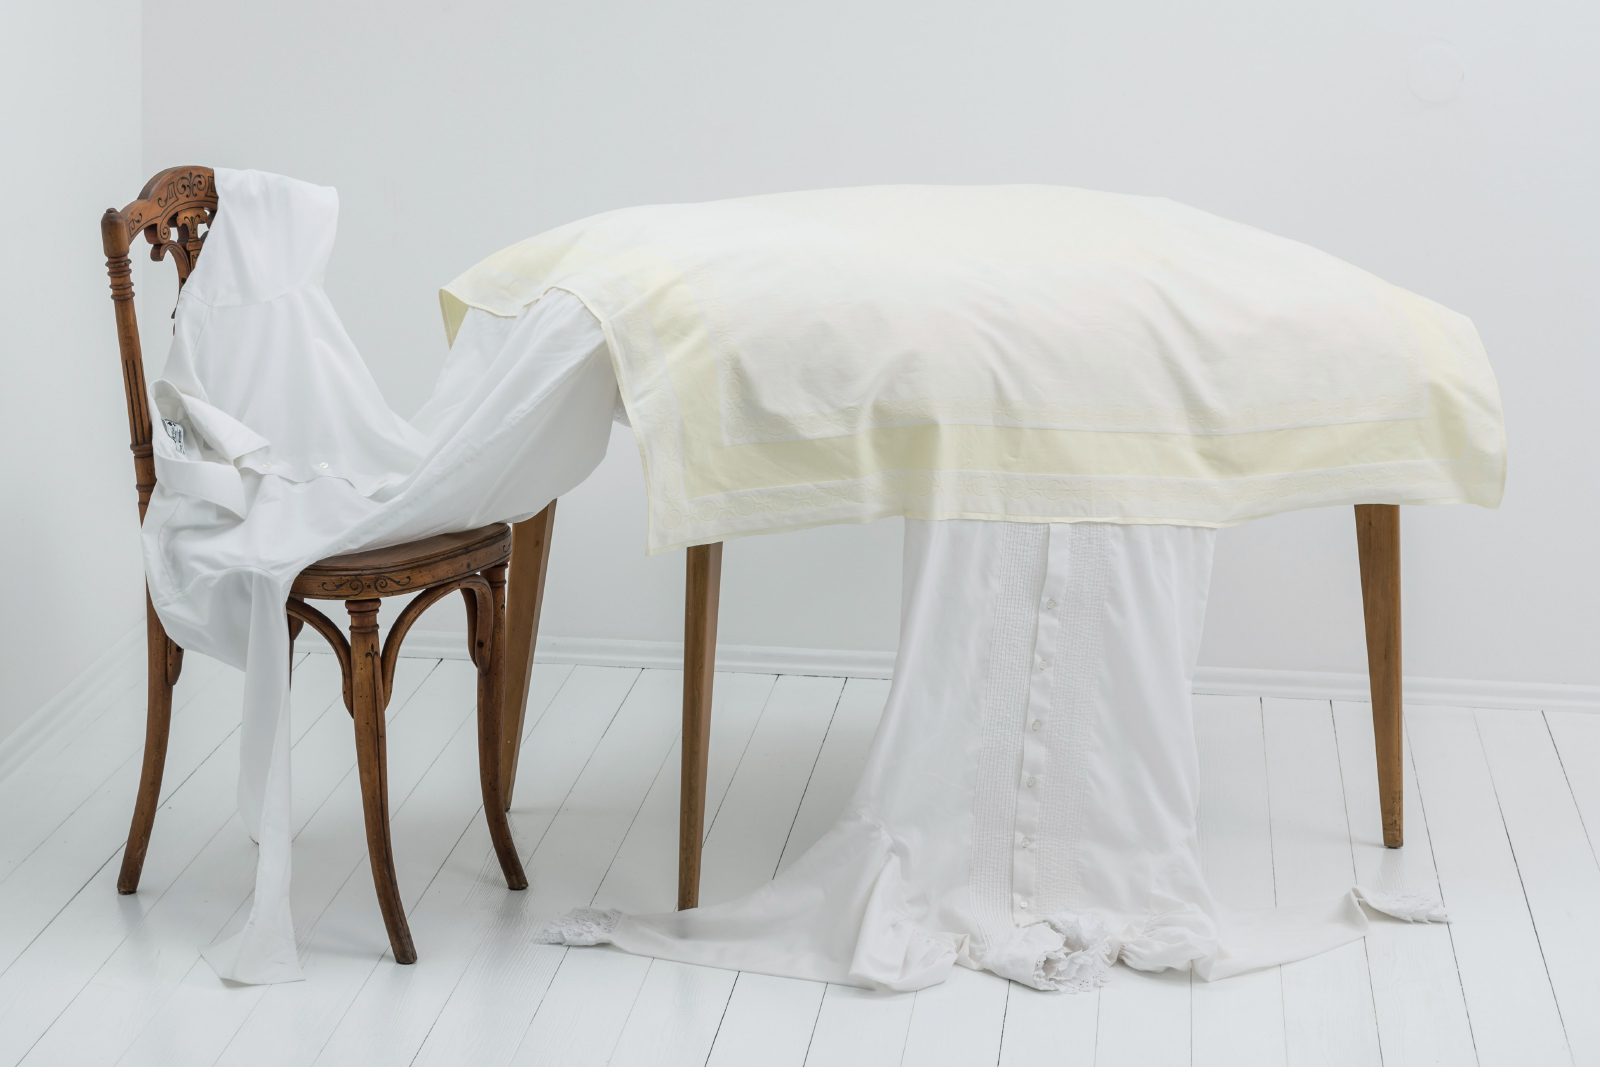 Tablecloth,
1998, 2014 | Objekt / Installation / Inszenierung
Tischdecke, gebrauchtes Herrenoberhemd, gebrauchte Damenbluse, (Esstisch, Bestuhlung)